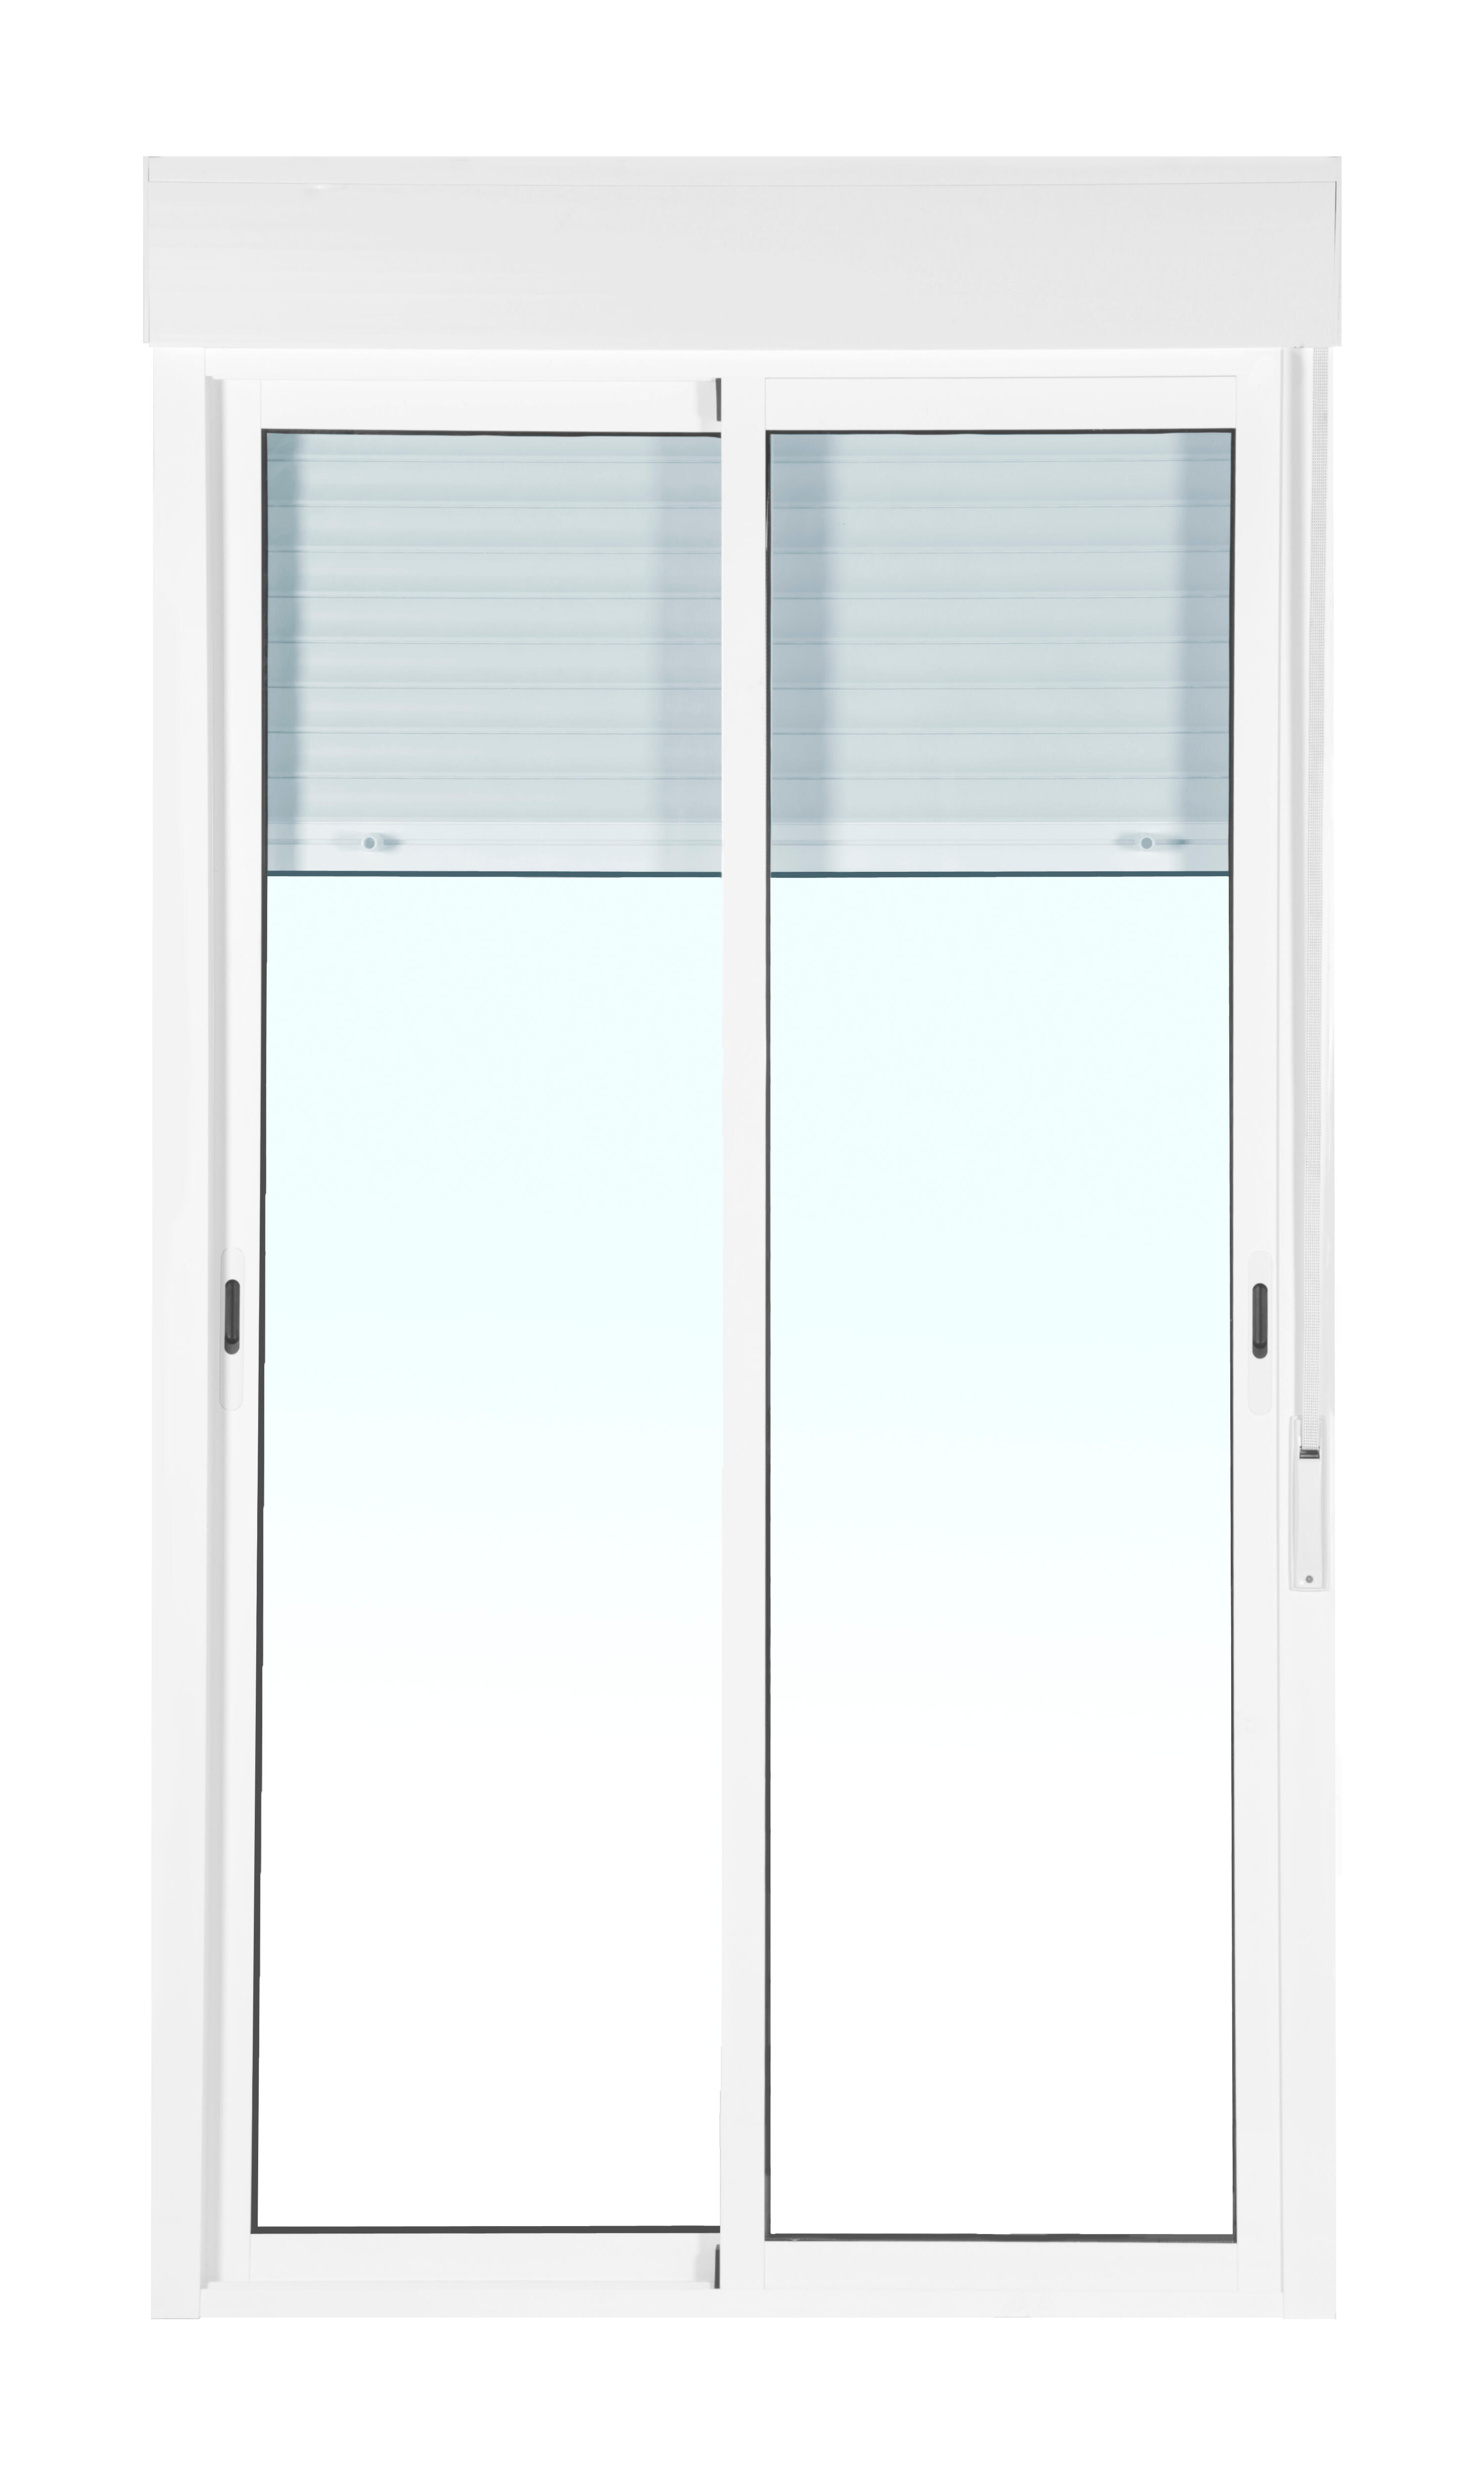 Balconera aluminio artens blanca corredera con persiana de 130x229cm de la marca ARTENS